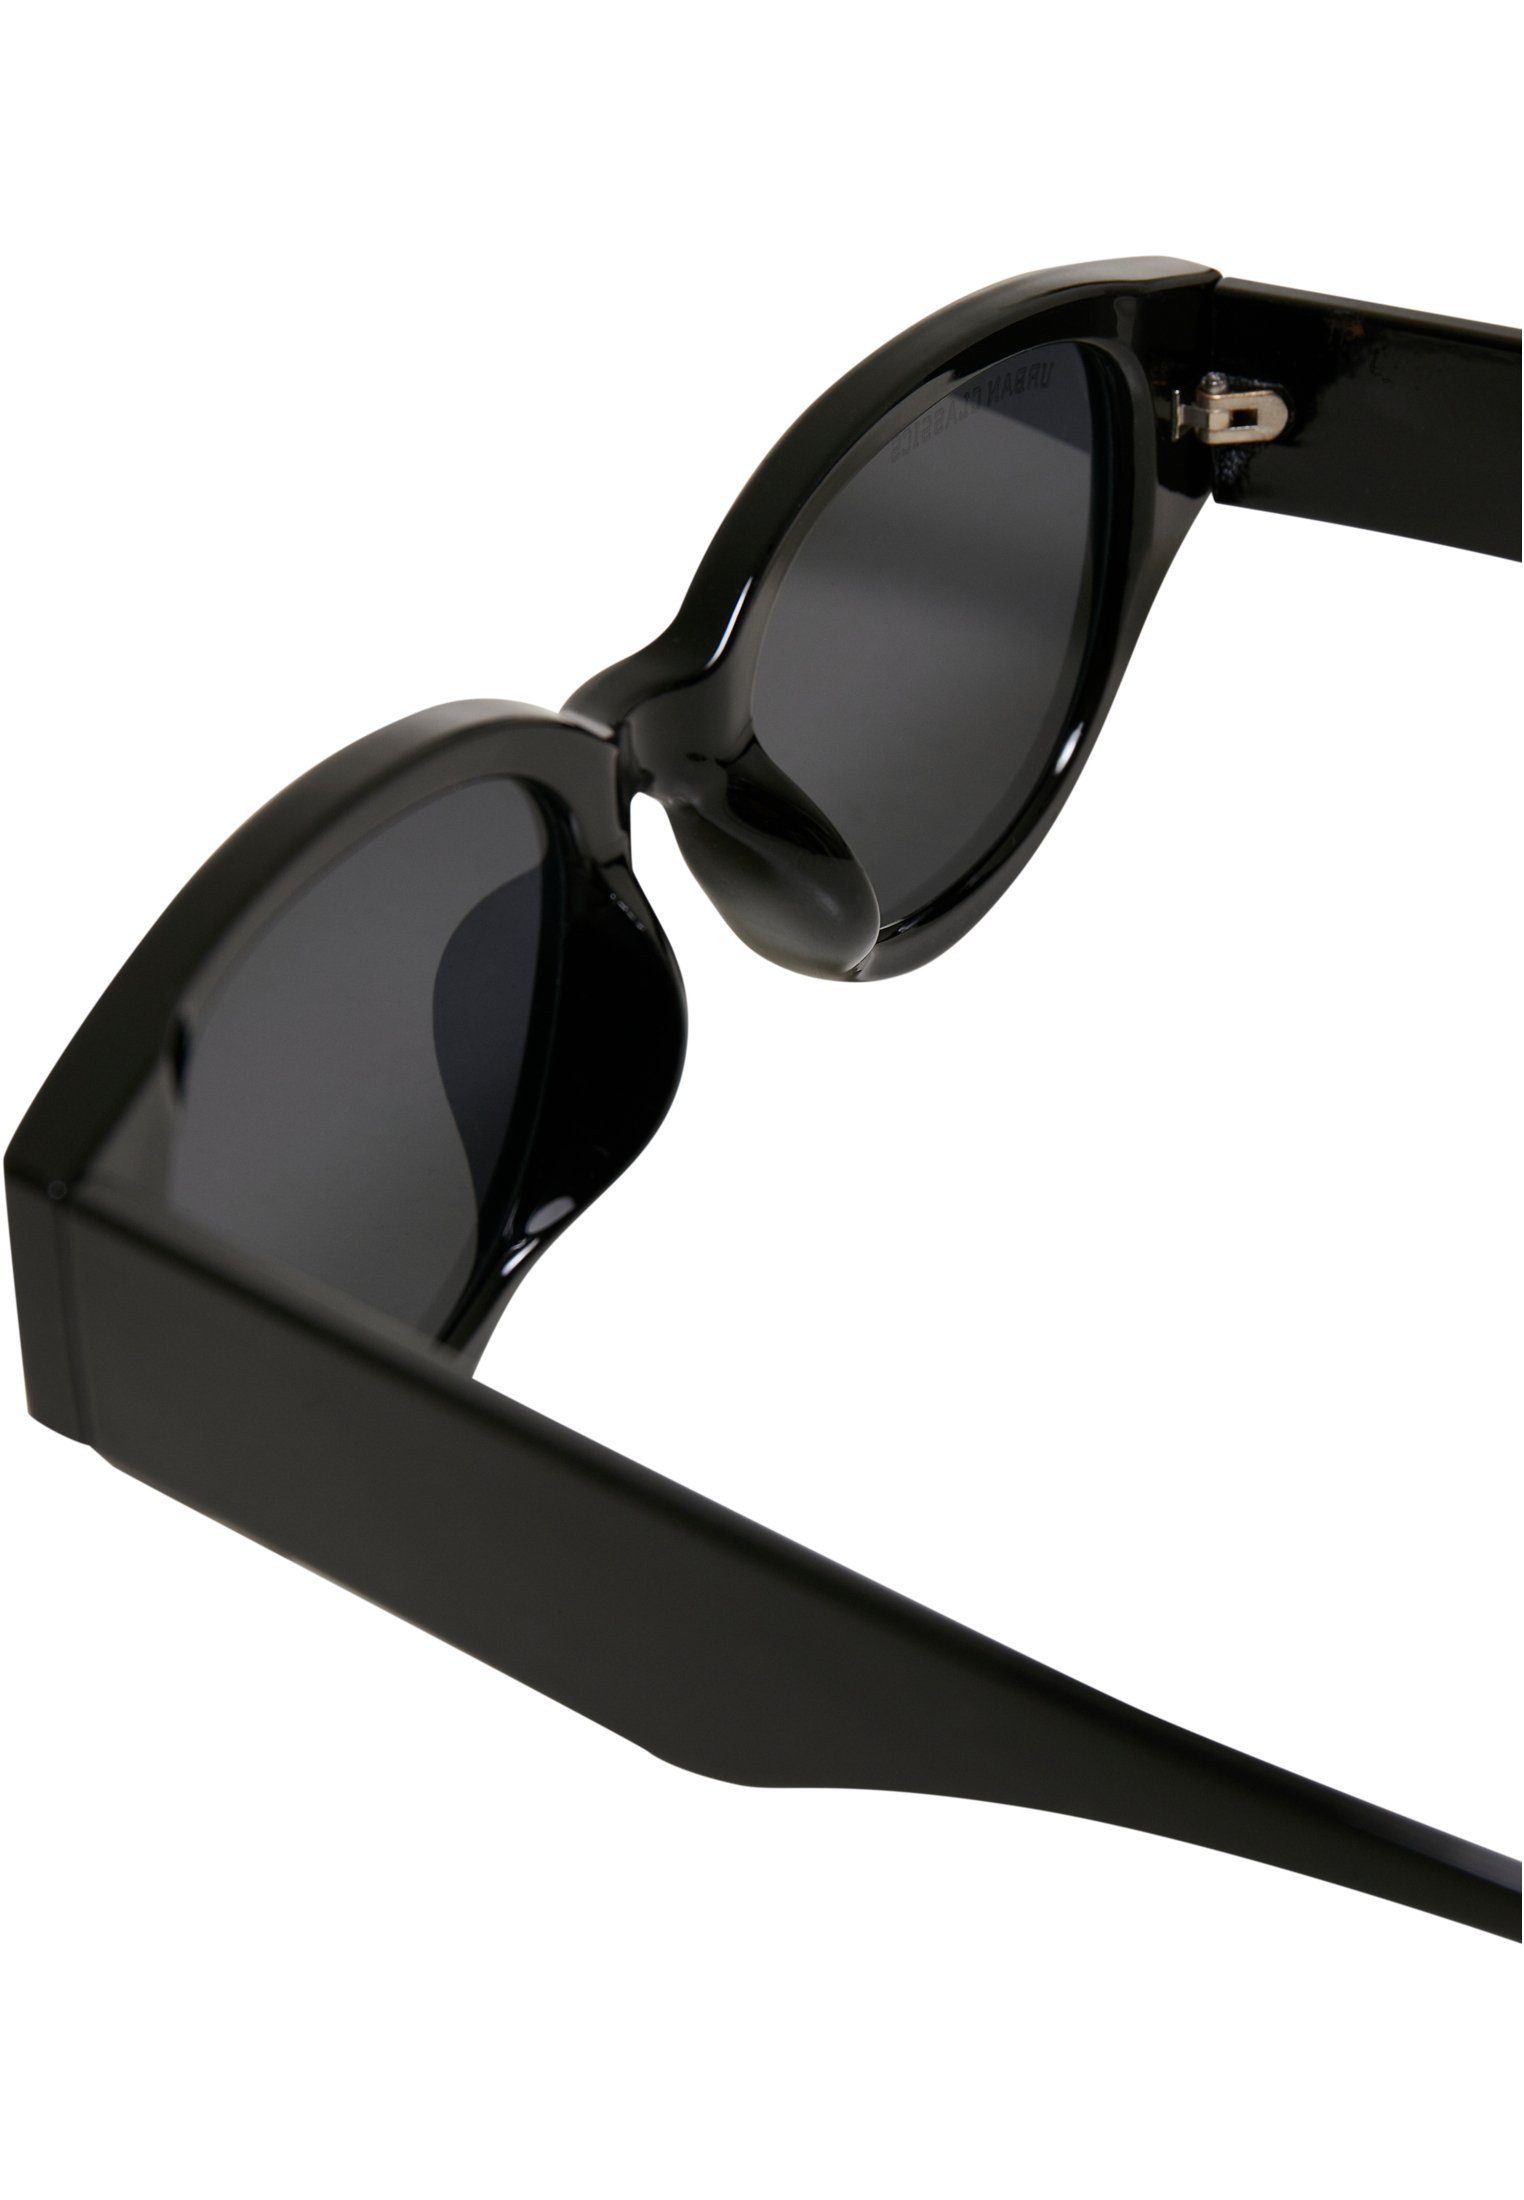 Sunglasses Cruz URBAN Unisex CLASSICS black Santa Sonnenbrille